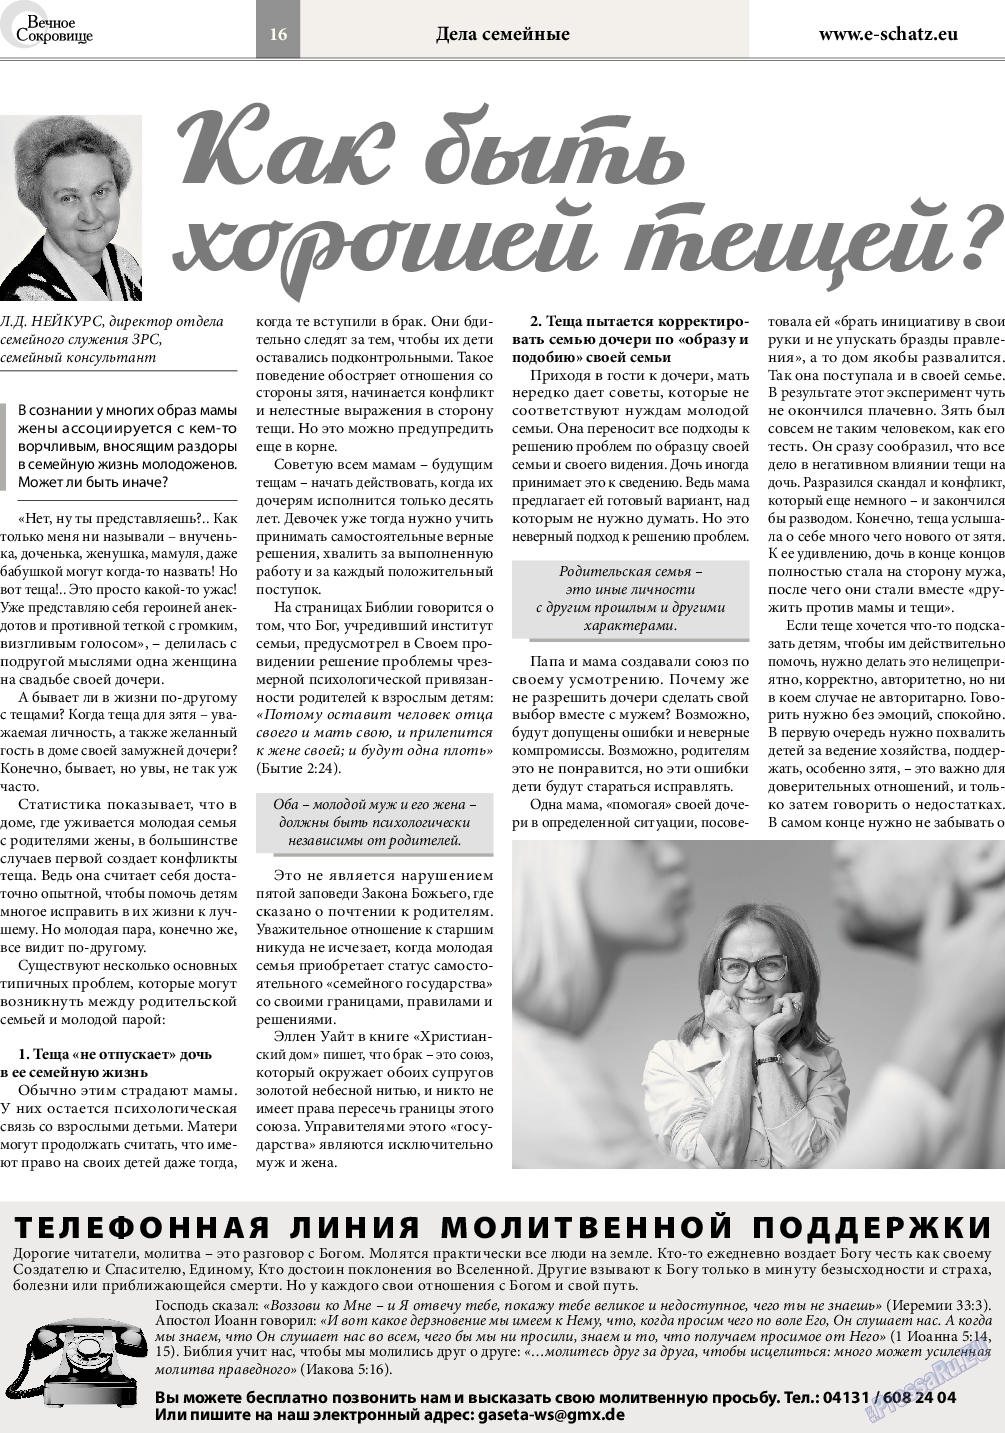 Вечное сокровище, газета. 2016 №5 стр.16